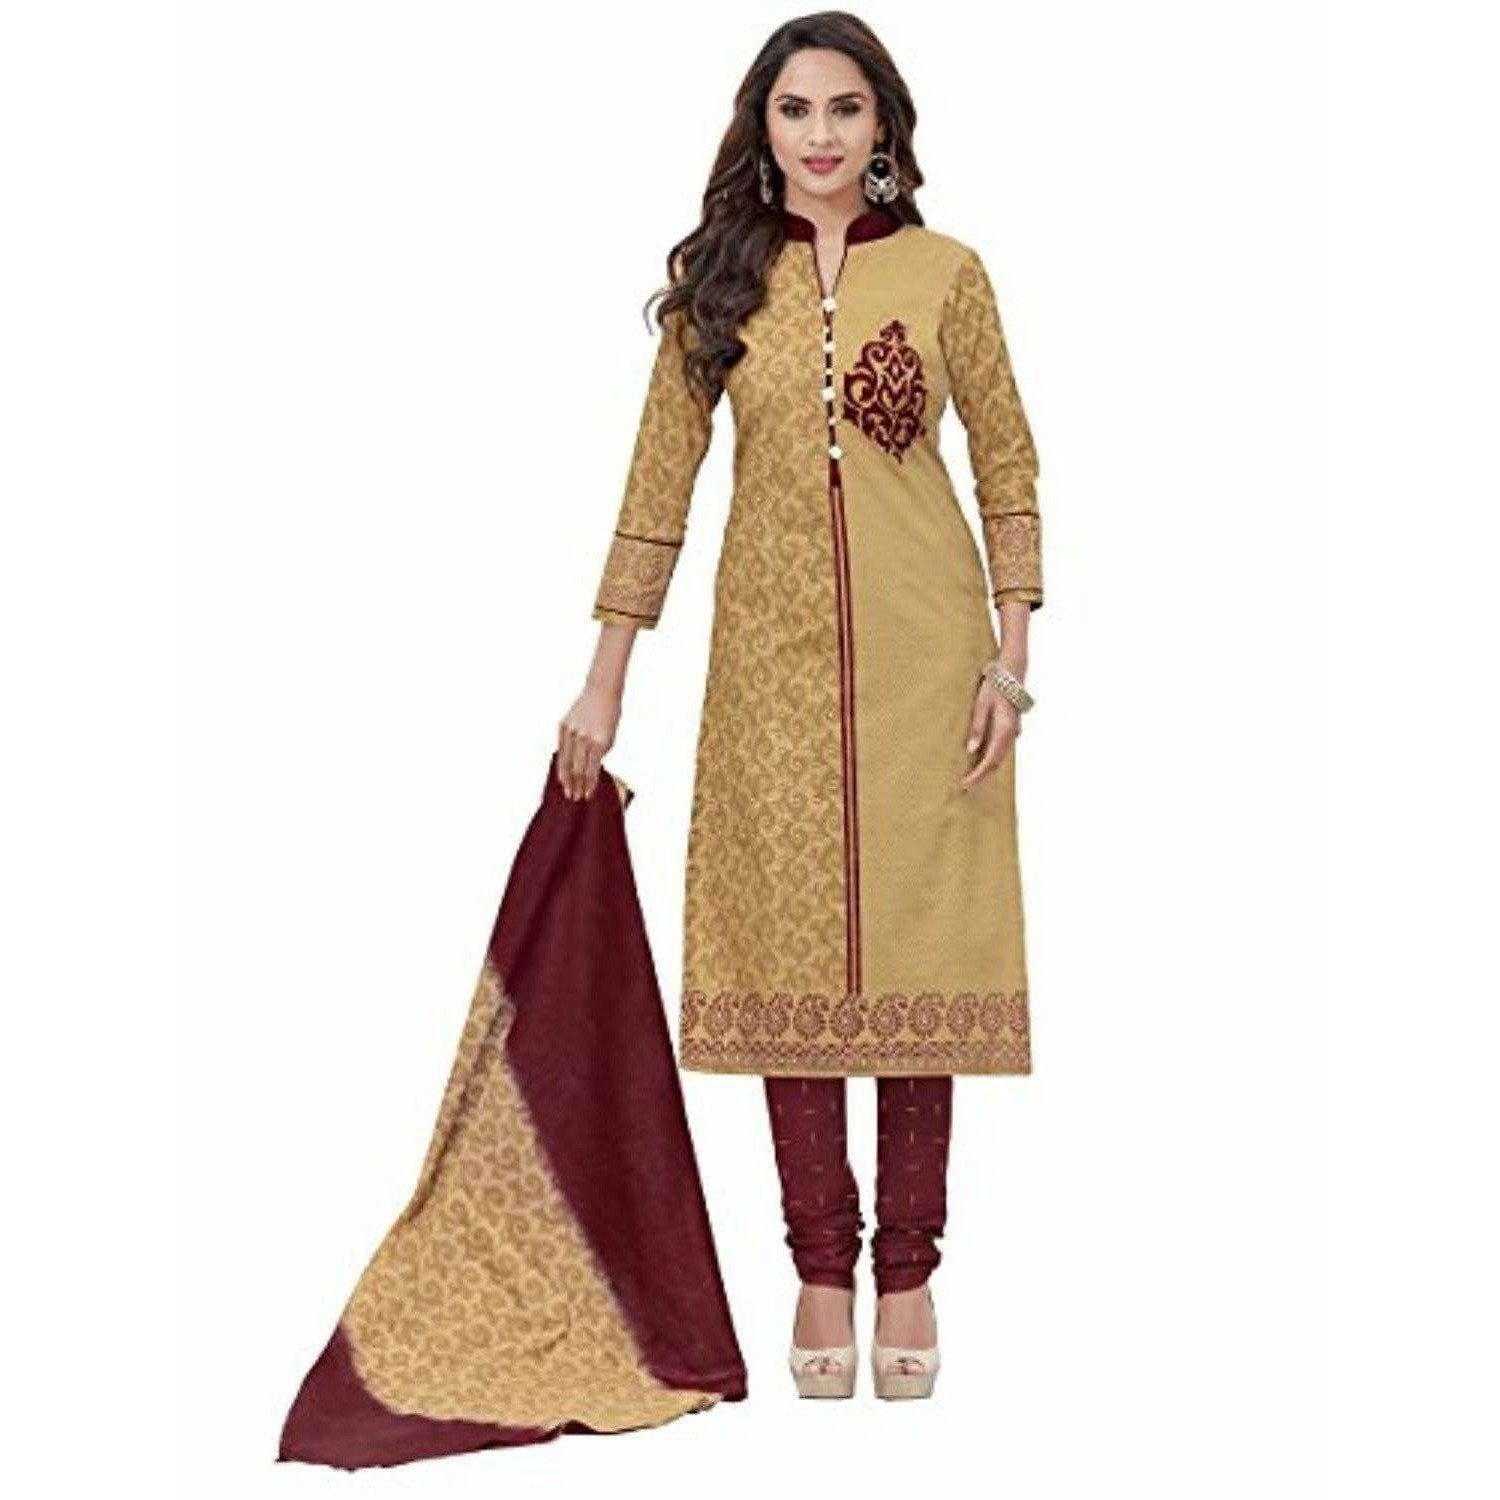 Blissta Designer Chudidar Dress at Rs 599 / Piece in Surat | Blissta  Clothing